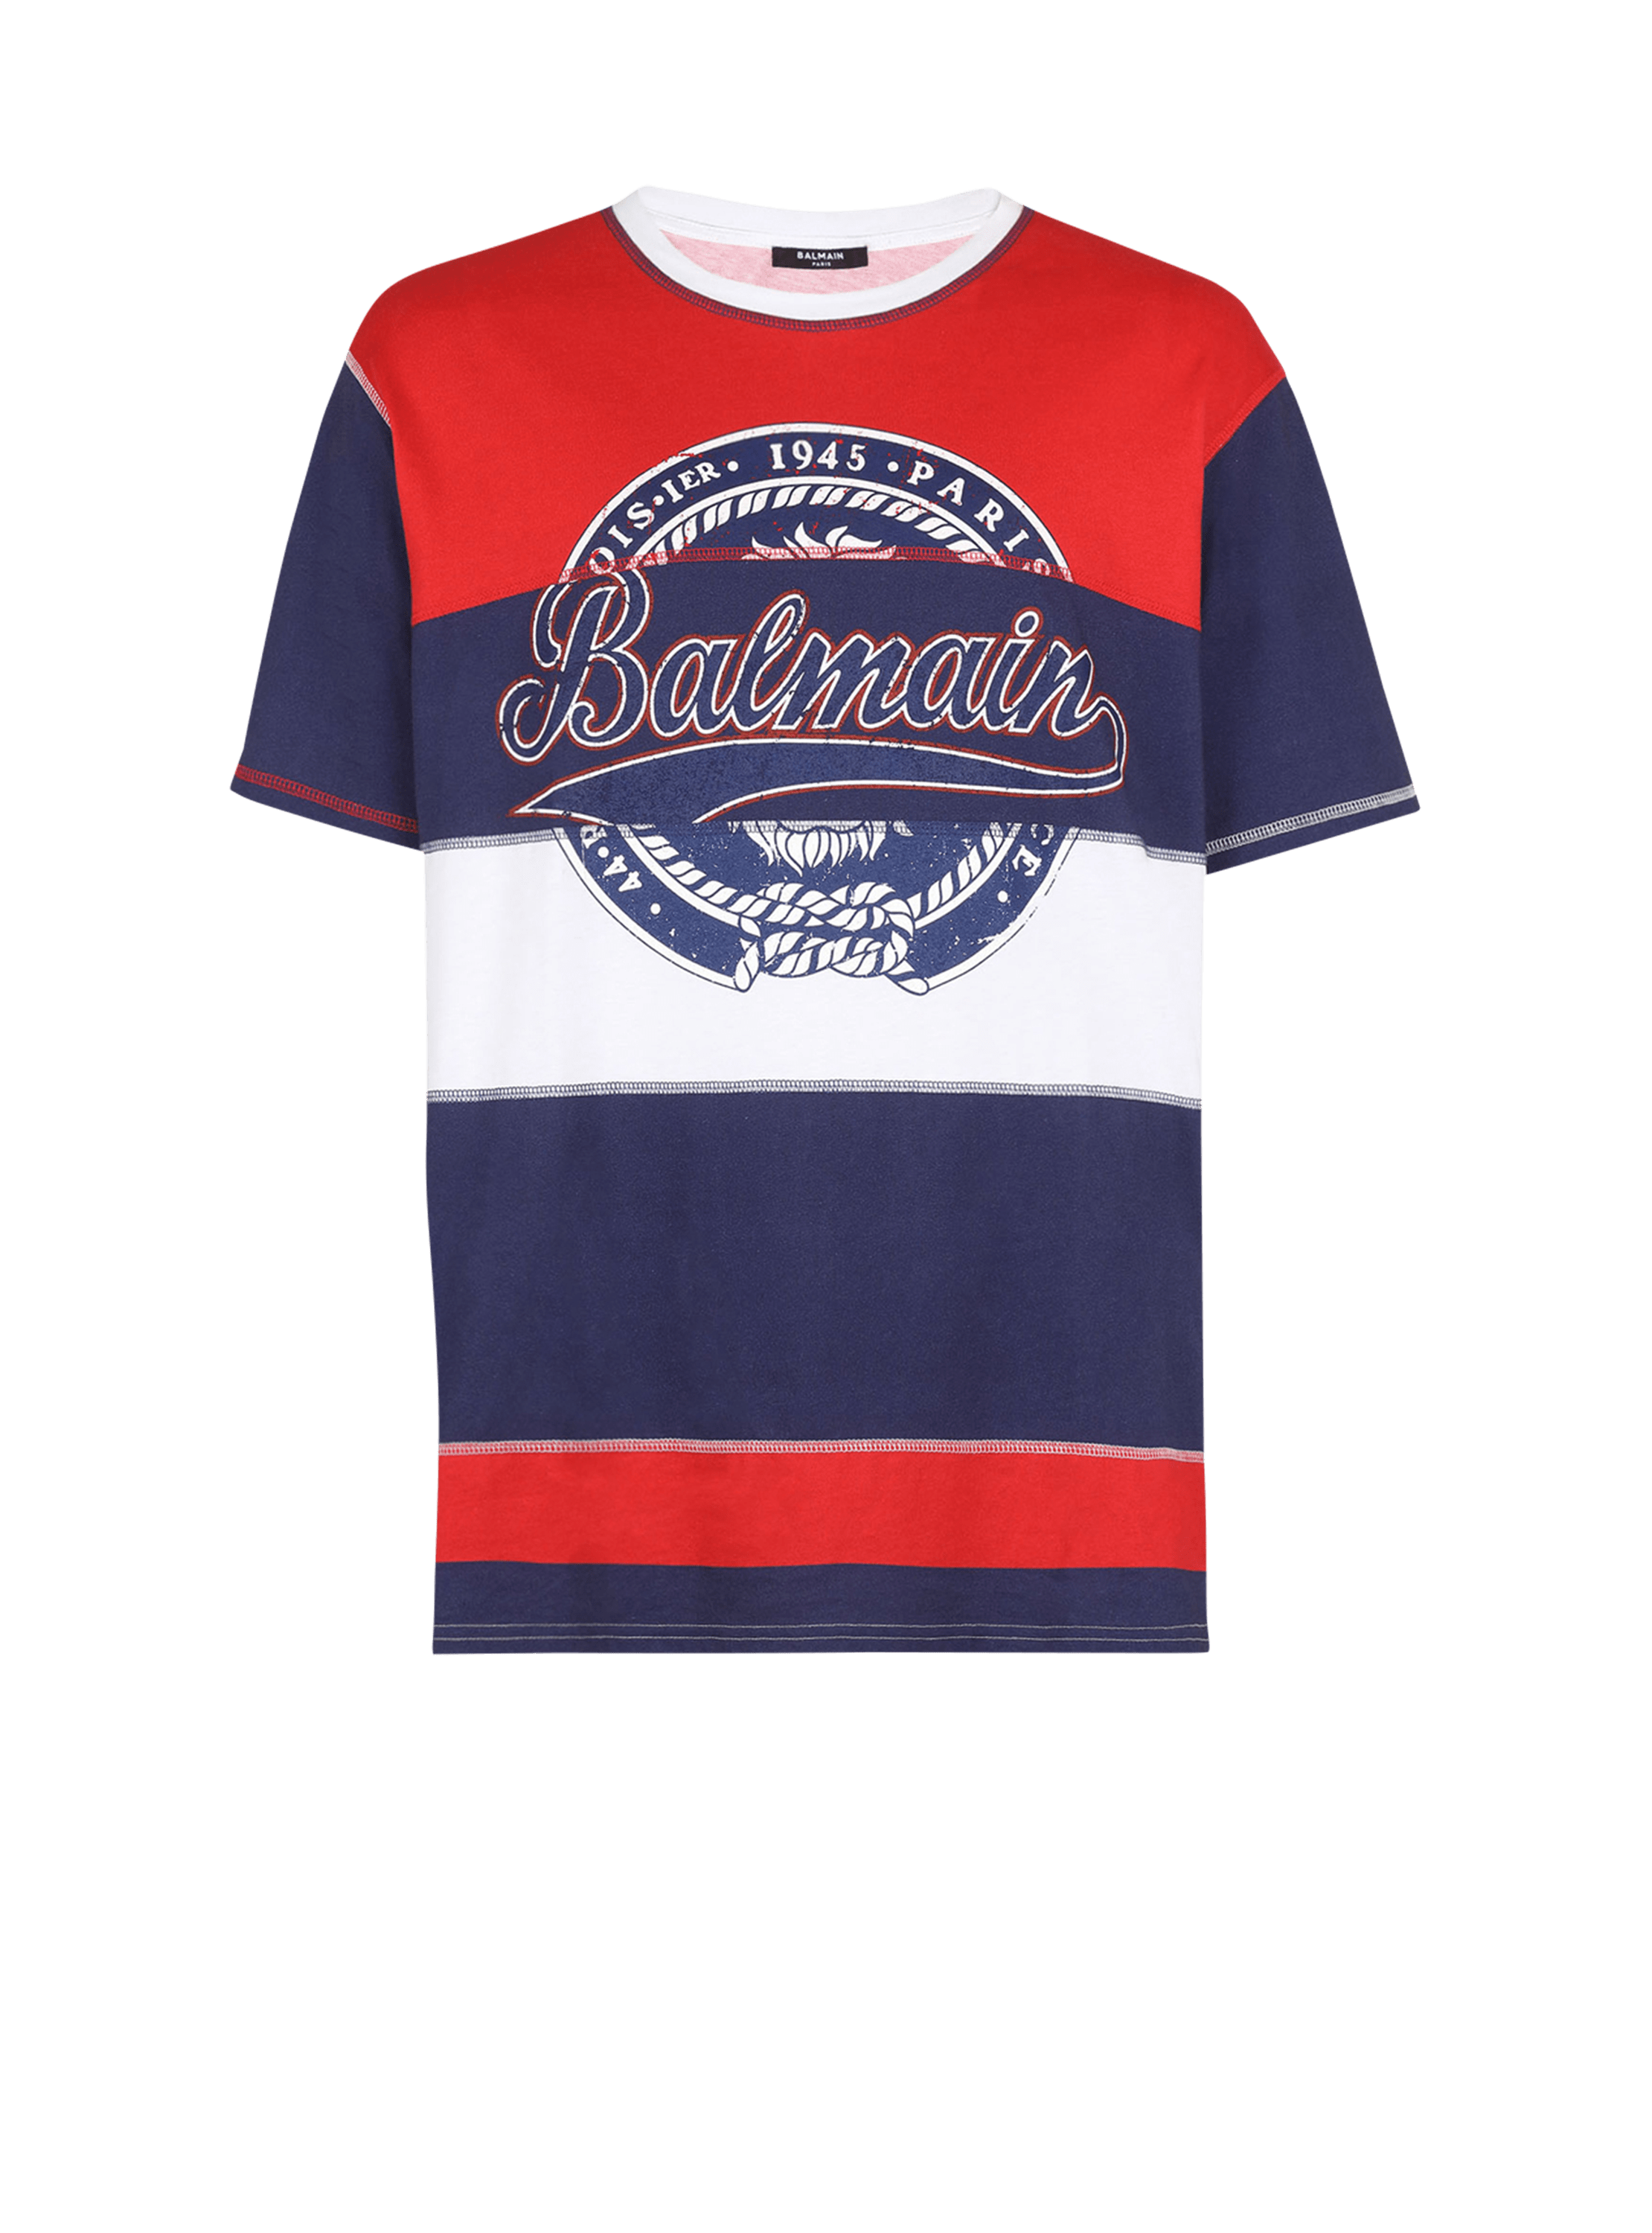 HIGH SUMMER CAPSULE - Cotton T-shirt with Balmain Paris logo print